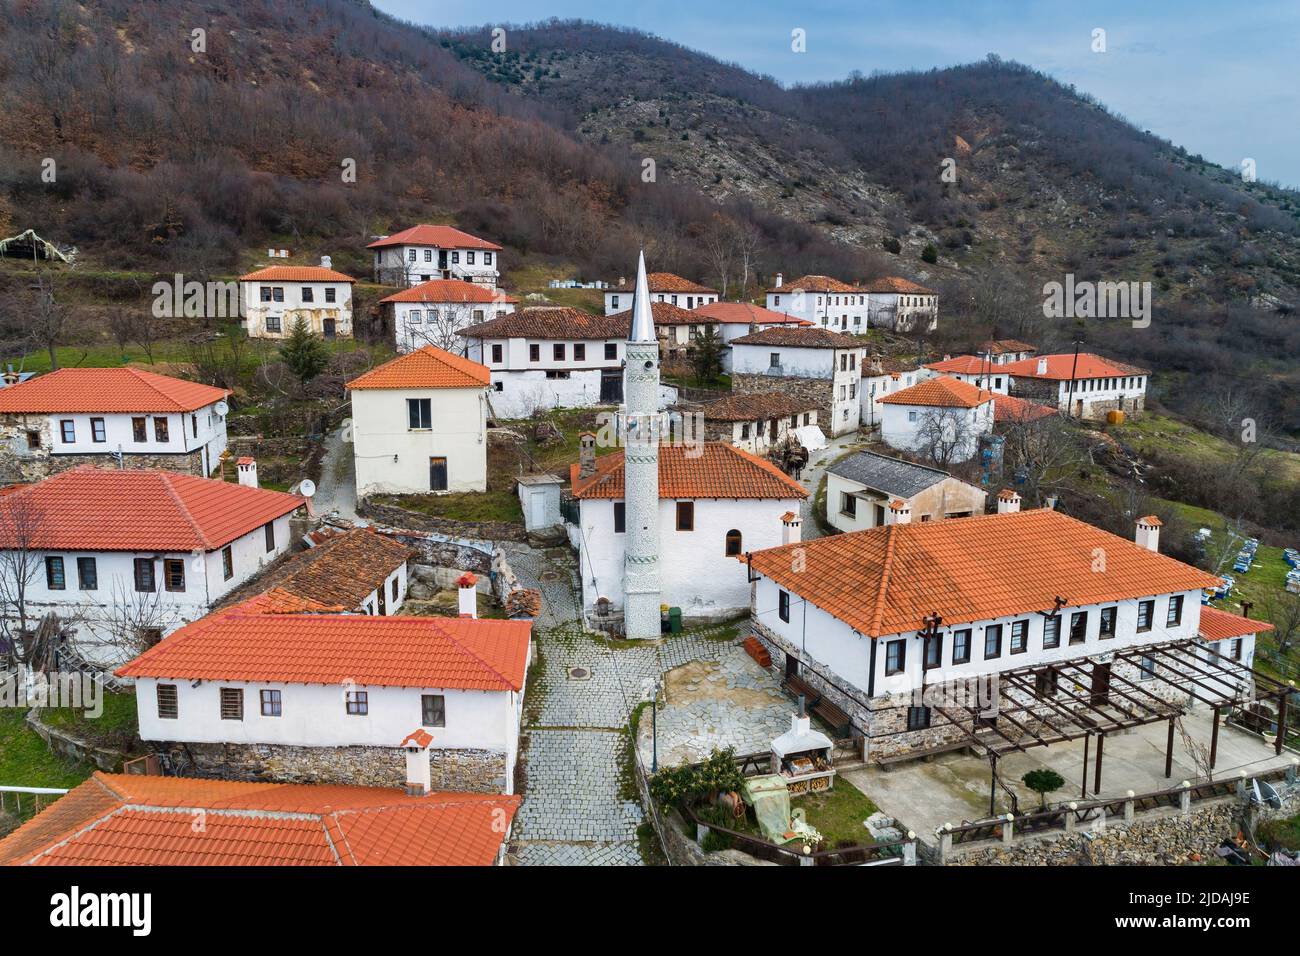 Luftaufnahme von Kotani, einem muslimischen Dorf in der Präfektur Xanthi in Griechenland nahe der griechisch-bulgarischen Grenze. Die Häuser der Siedlung sind sehr o Stockfoto